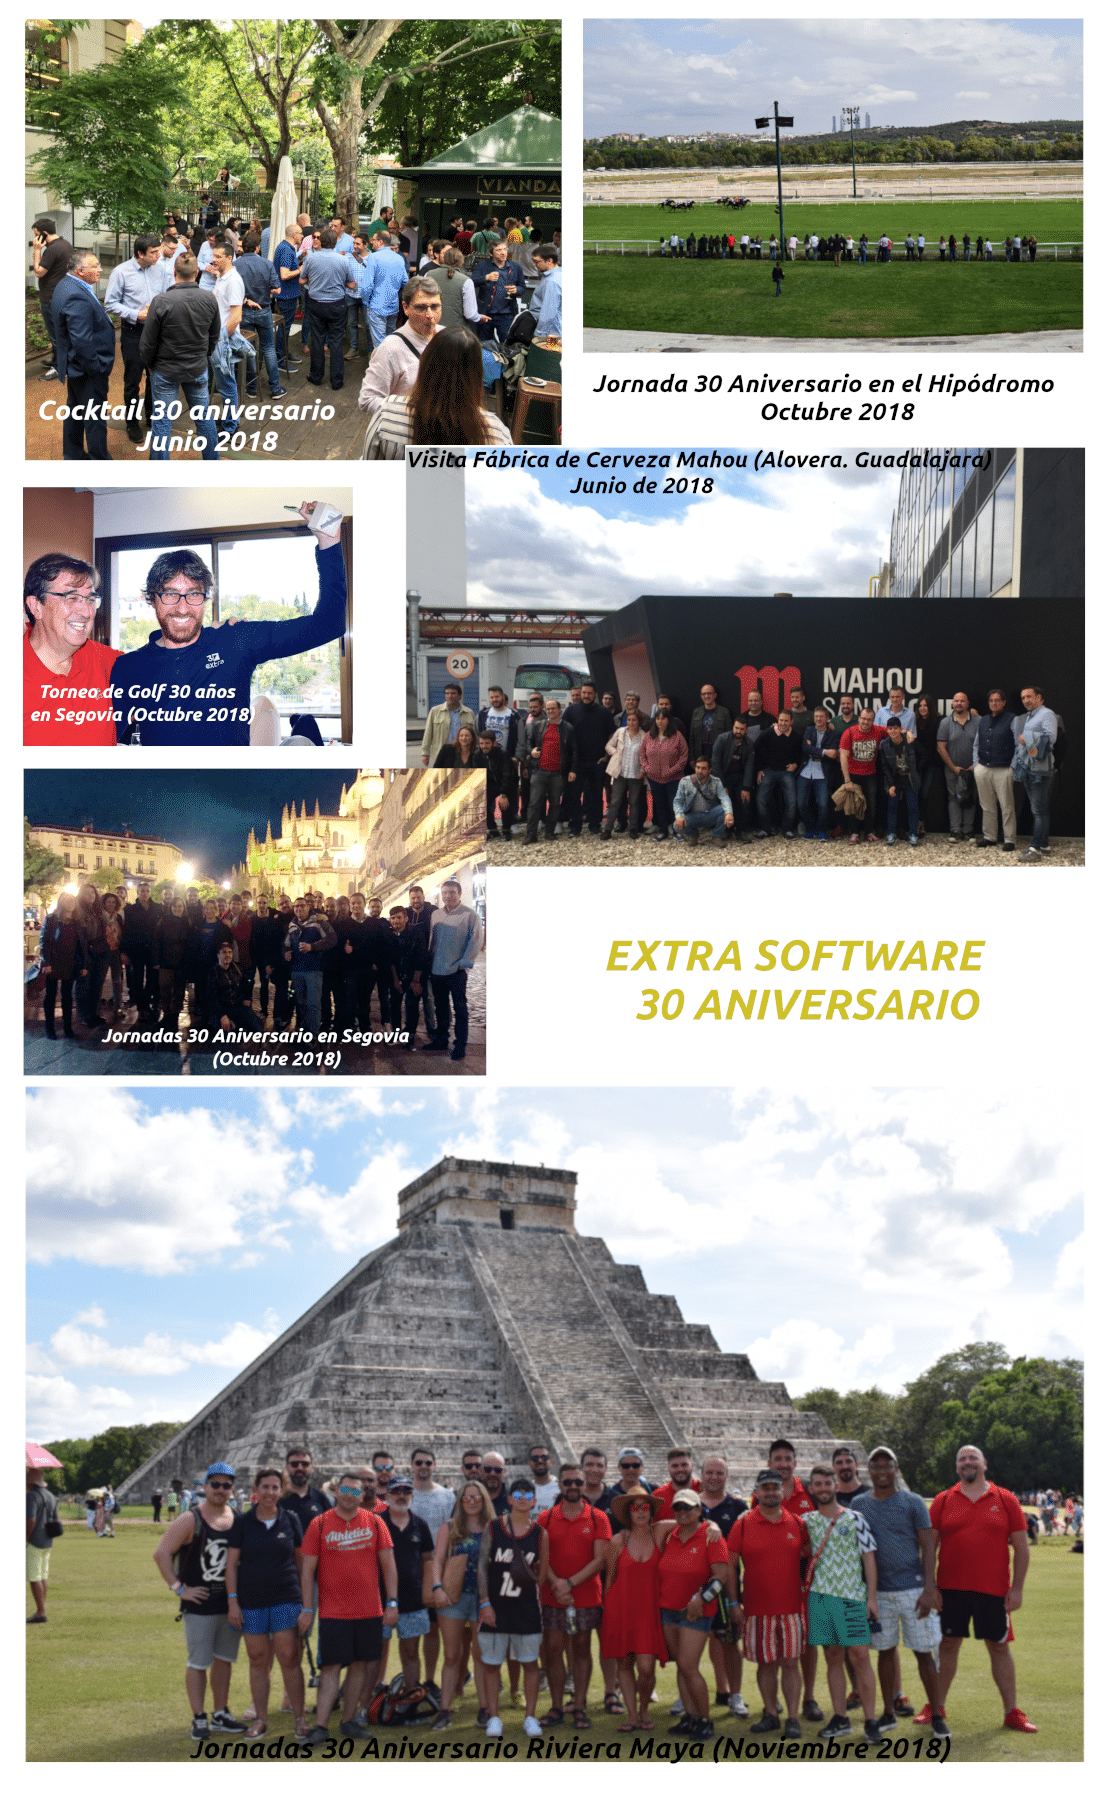 30 Aniversario Extra Software